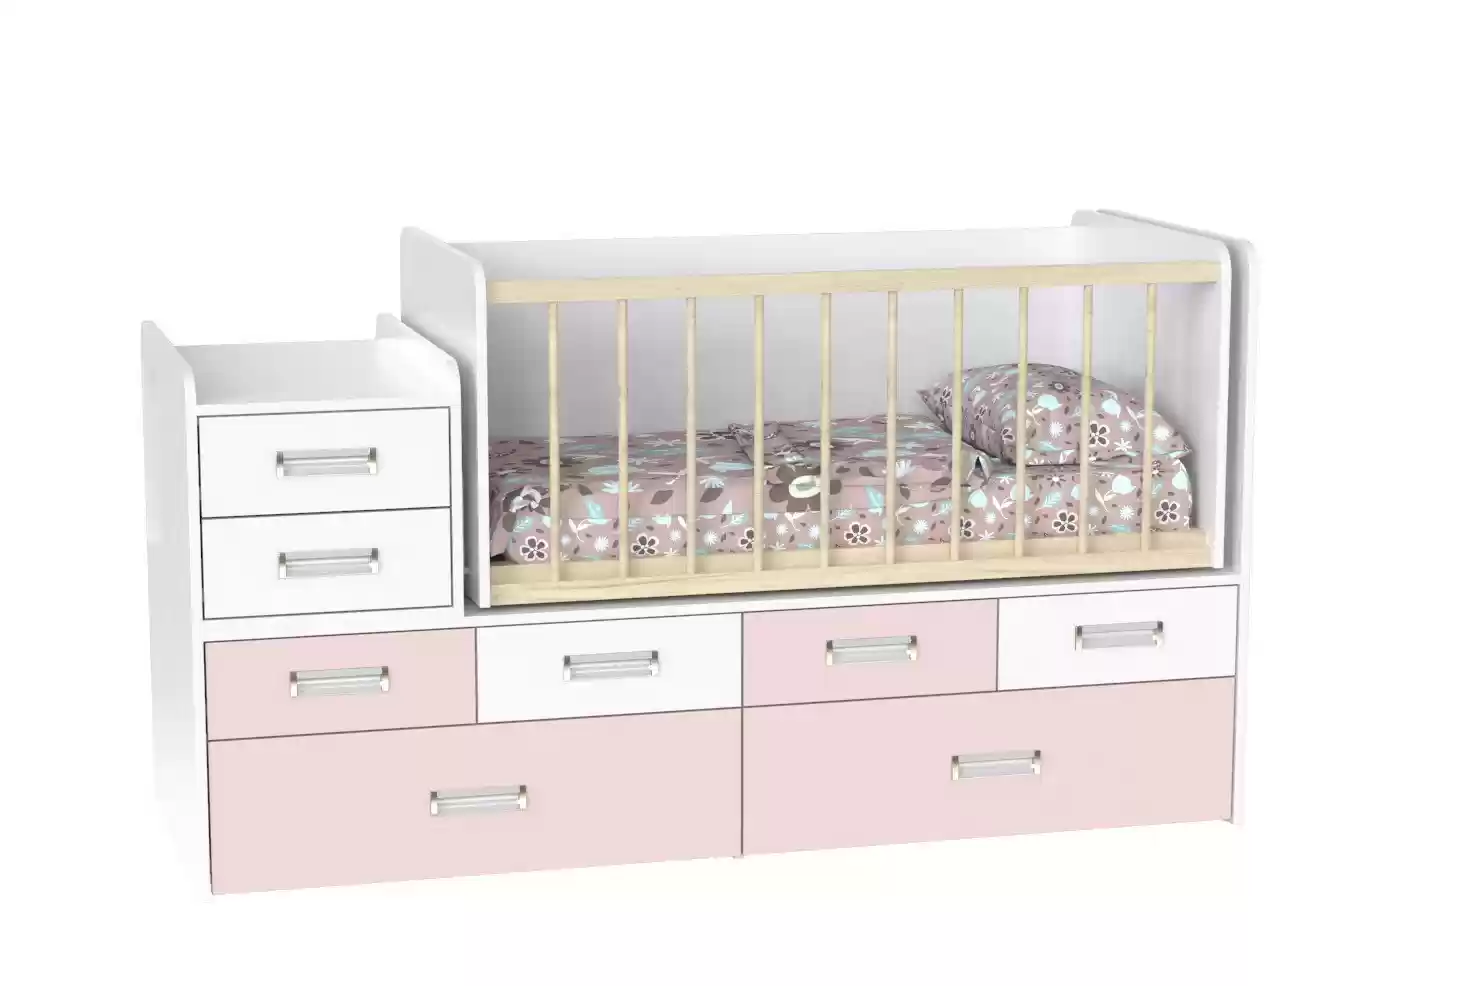 Детская кровать Binky ДС4114 (3 в 1) аляска/сакура + аляска (ДСП)